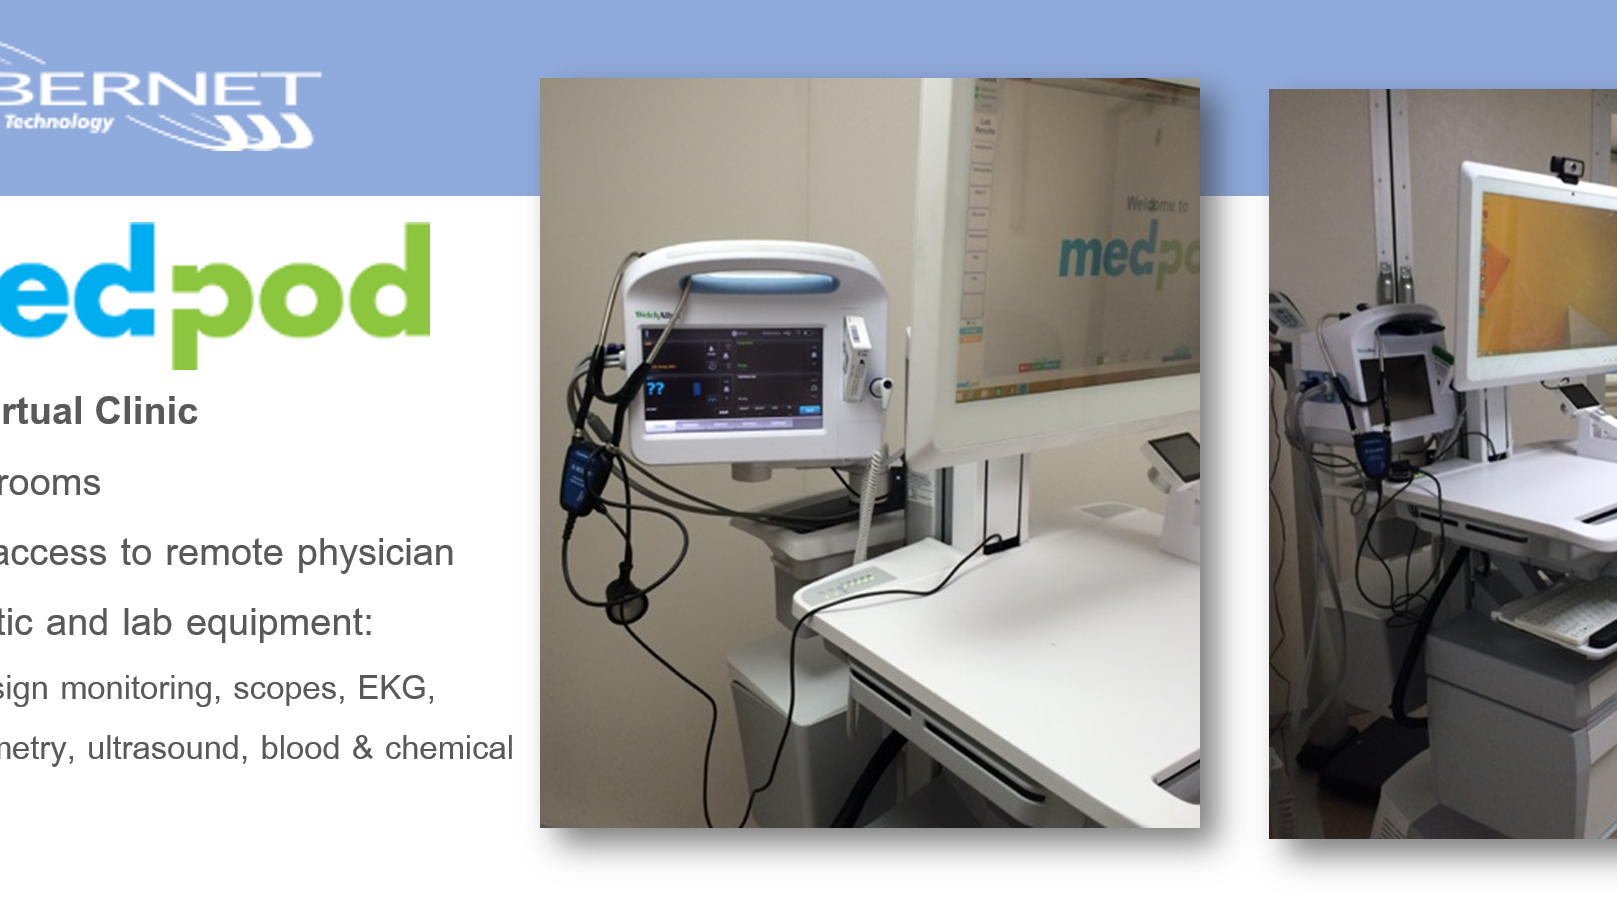 medpod virtual clinic